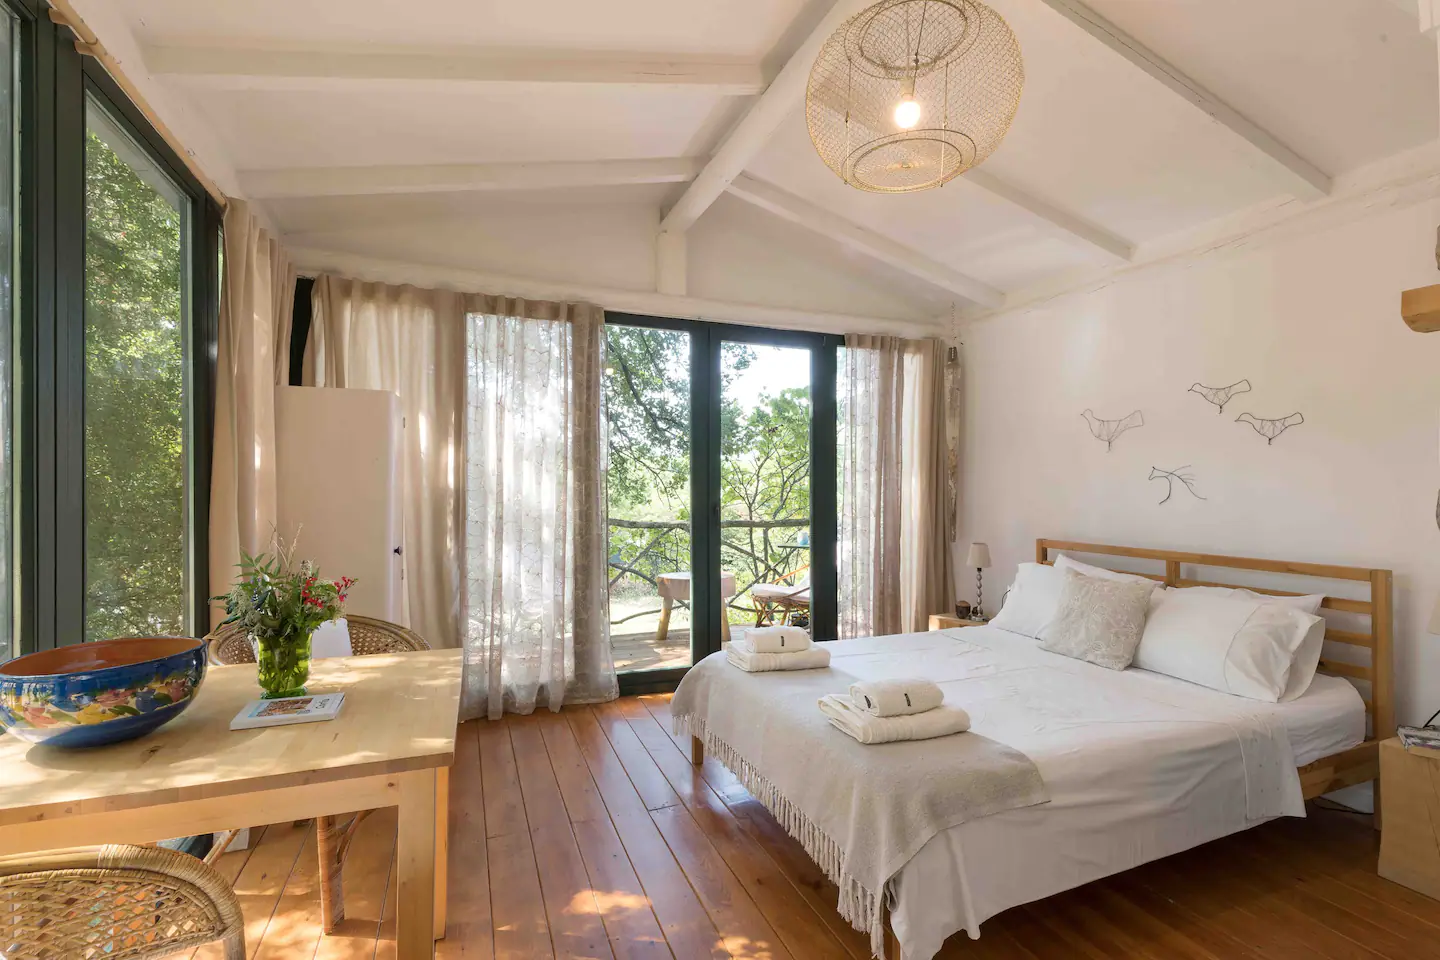 Διαμονές στην ελληνική φύση: 5 νέες επιλογές για φθινοπωρινά ταξίδια με το Airbnb"
